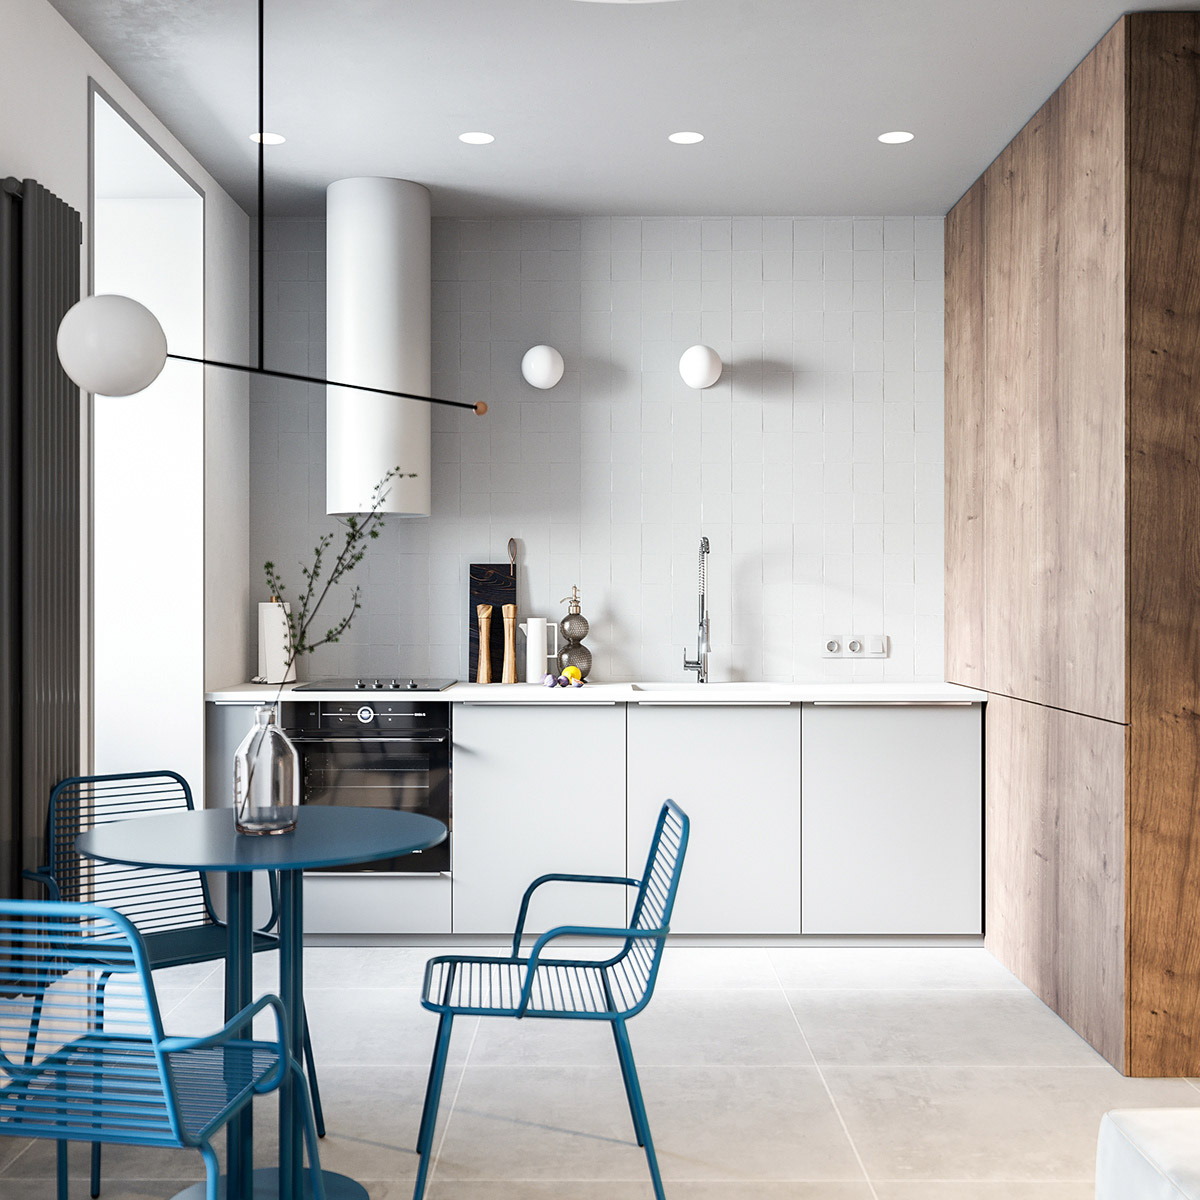 Phòng bếp với bức tường màu xám - trắng thanh lịch, tương phản với chất liệu gỗ tự nhiên ấm áp. Hai đèn treo tường hiện đại điểm xuyết trên nền tường ốp gạch.